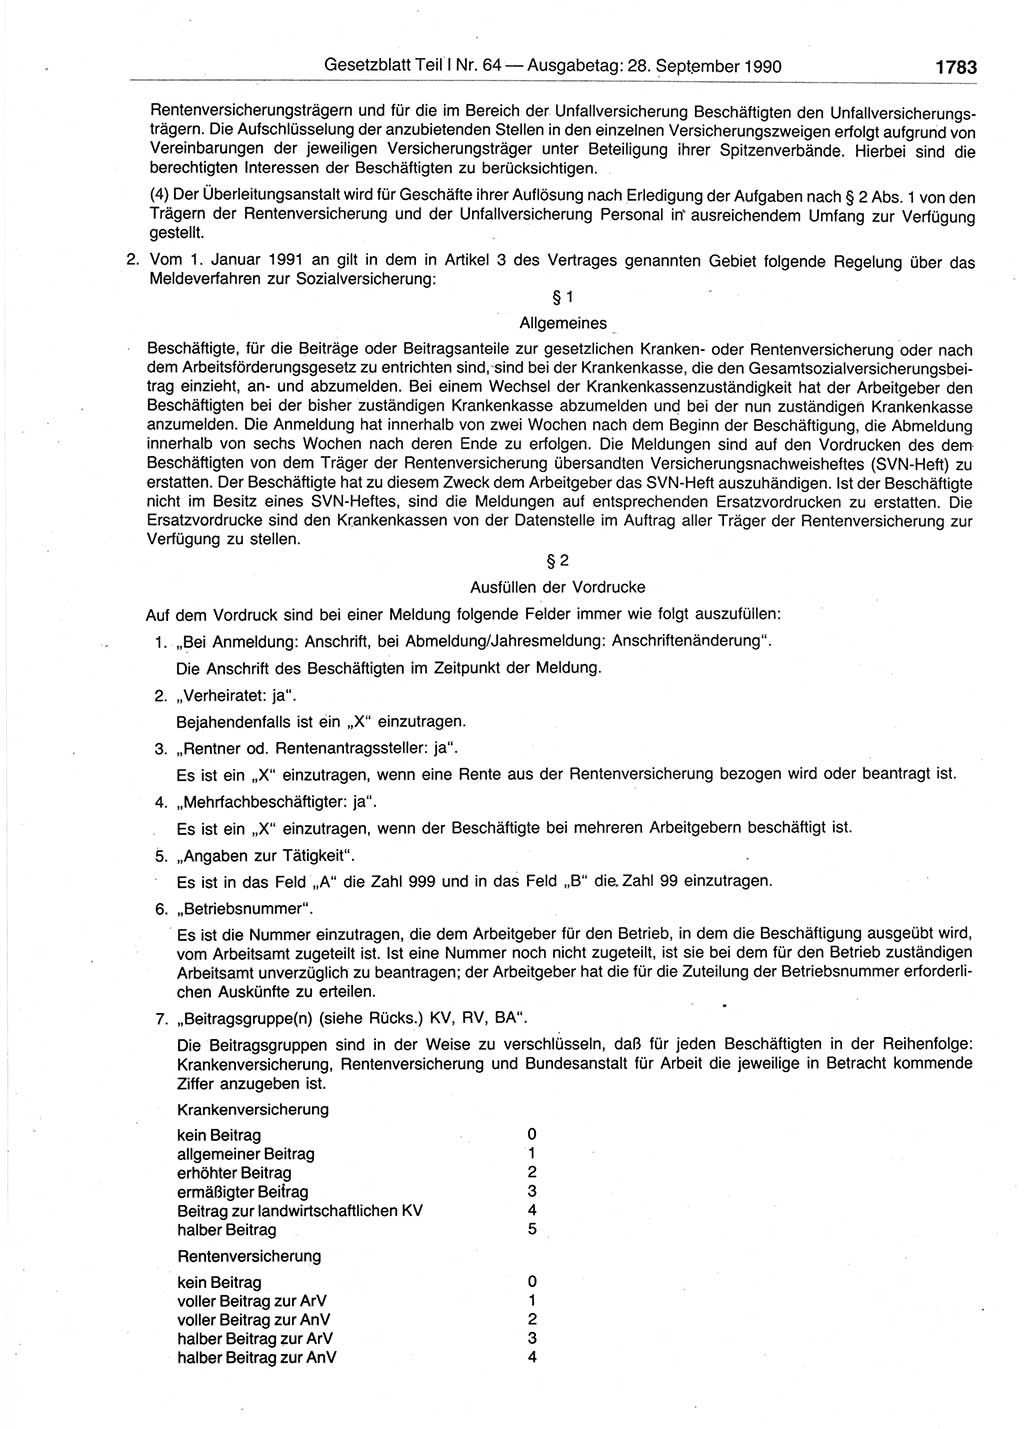 Gesetzblatt (GBl.) der Deutschen Demokratischen Republik (DDR) Teil Ⅰ 1990, Seite 1783 (GBl. DDR Ⅰ 1990, S. 1783)